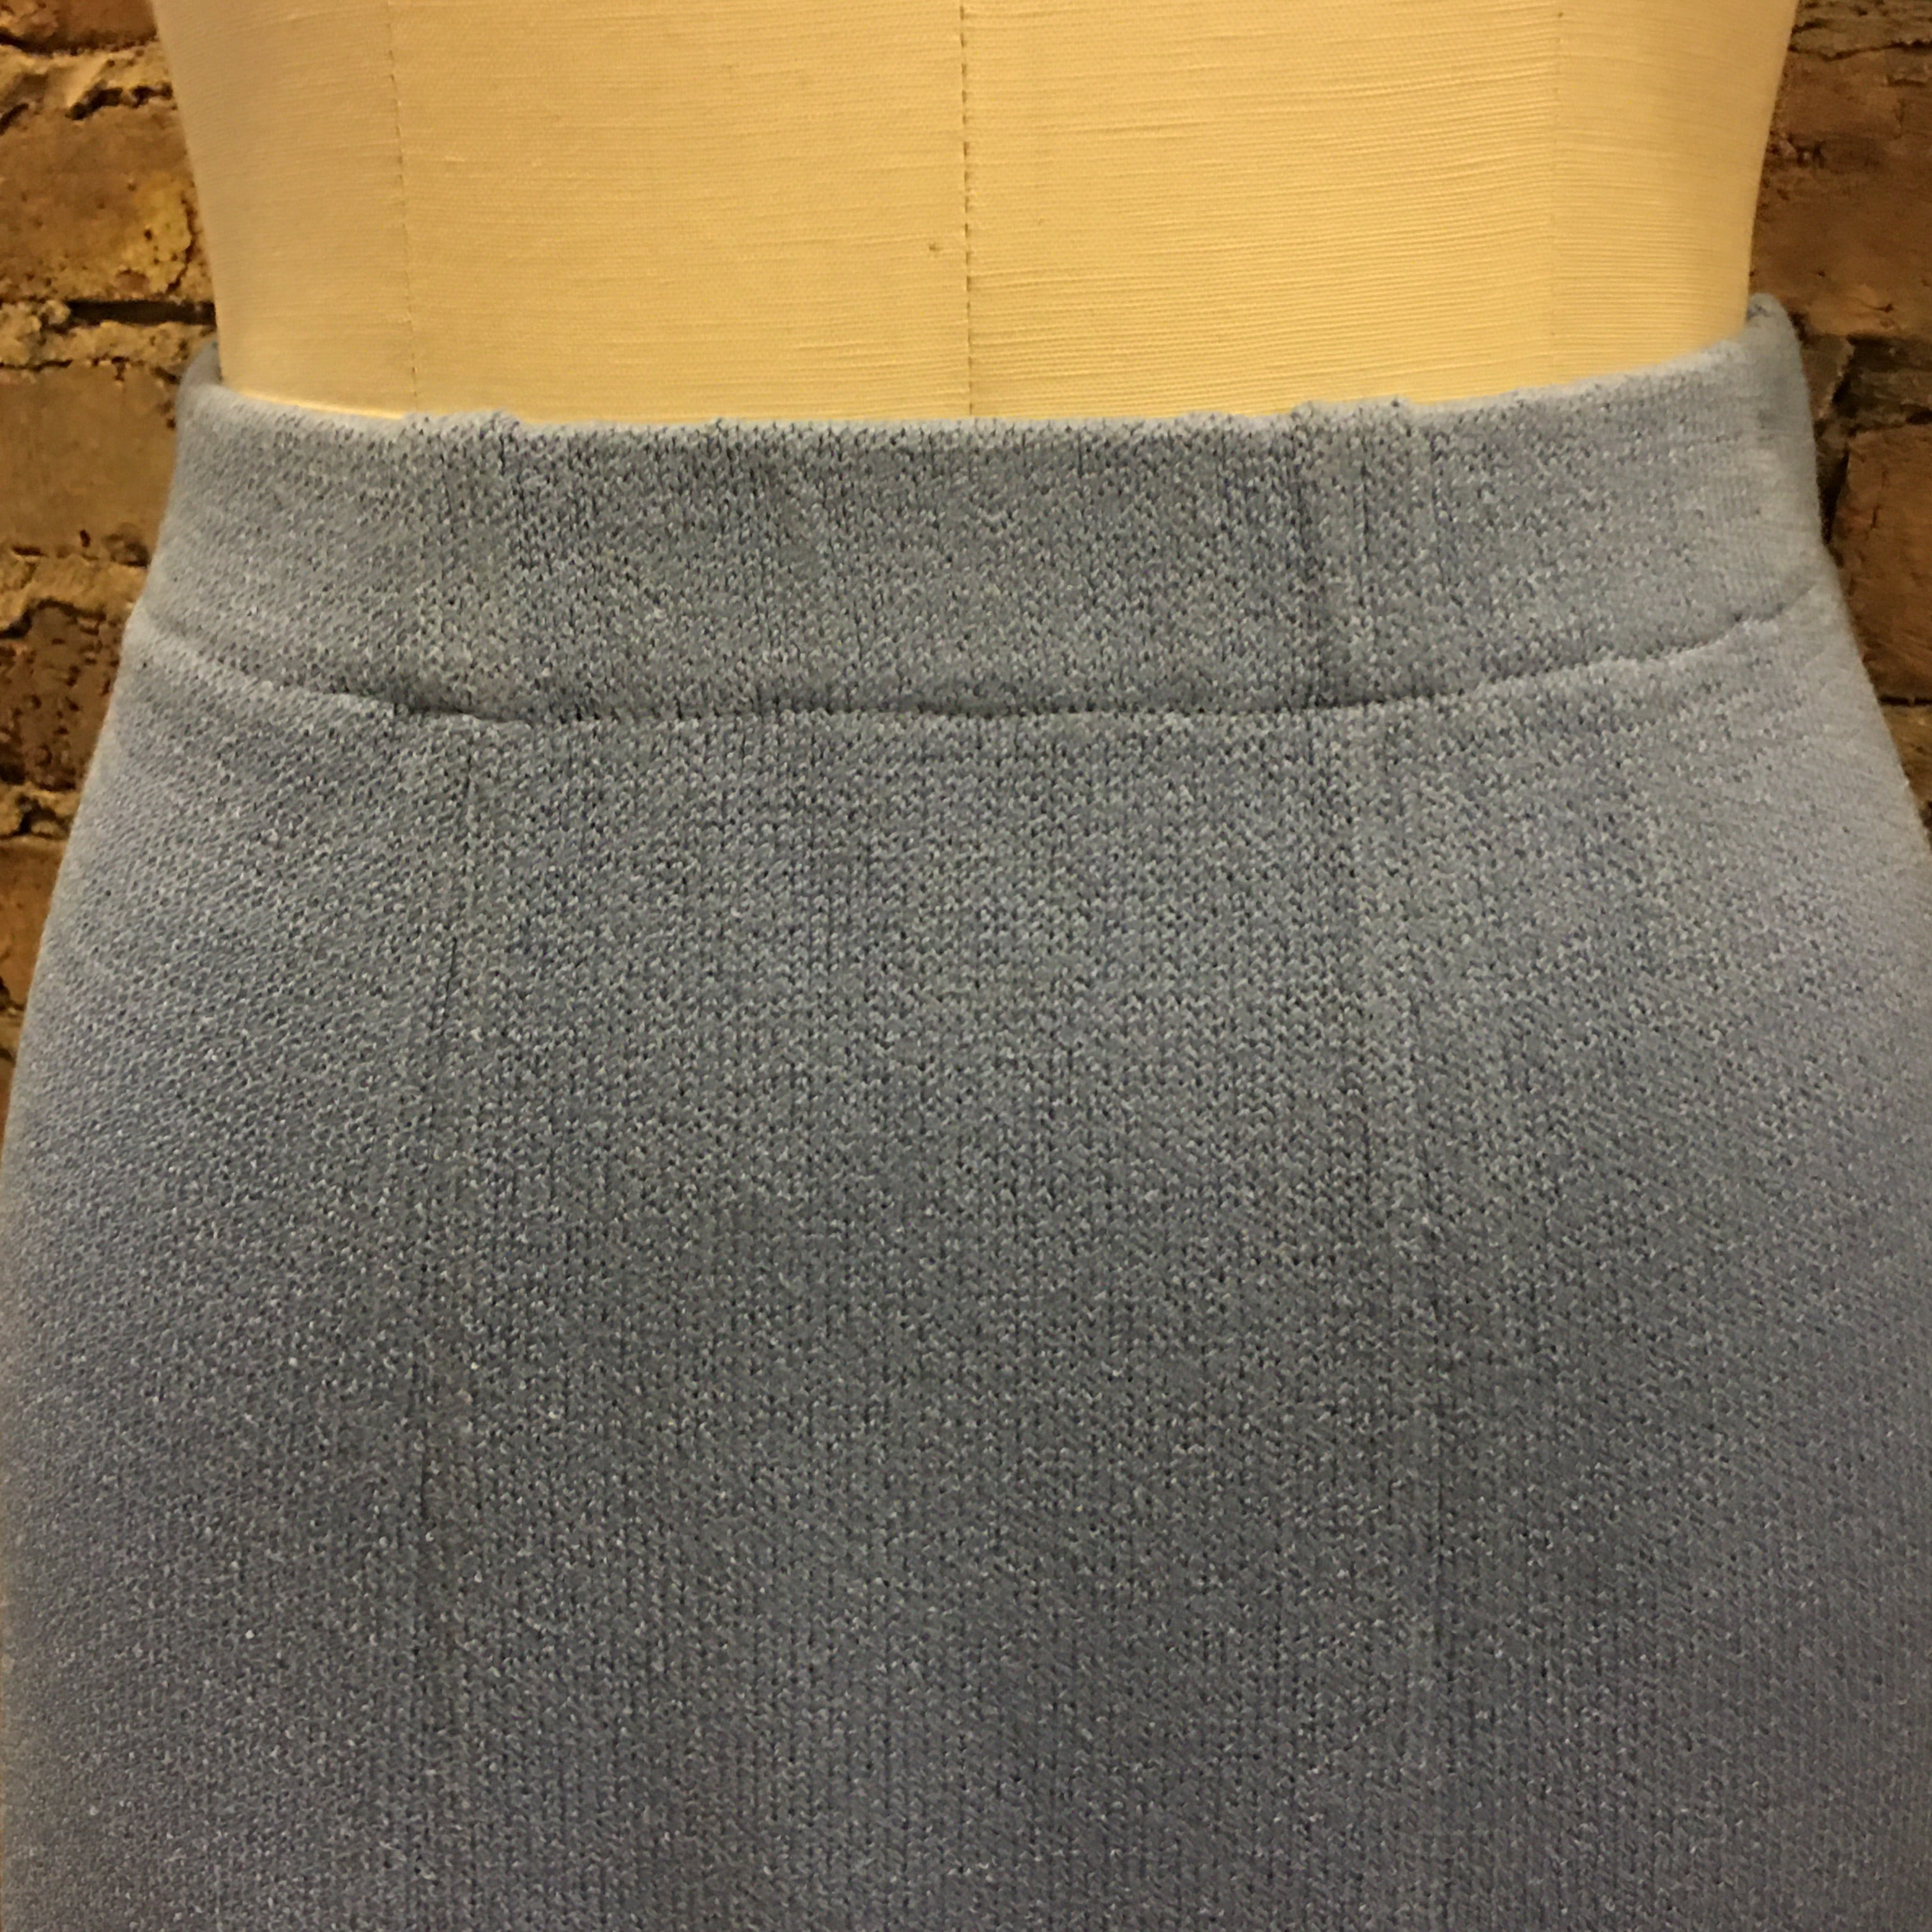 Vintage St John by Marie Gray Light Blue Skirt